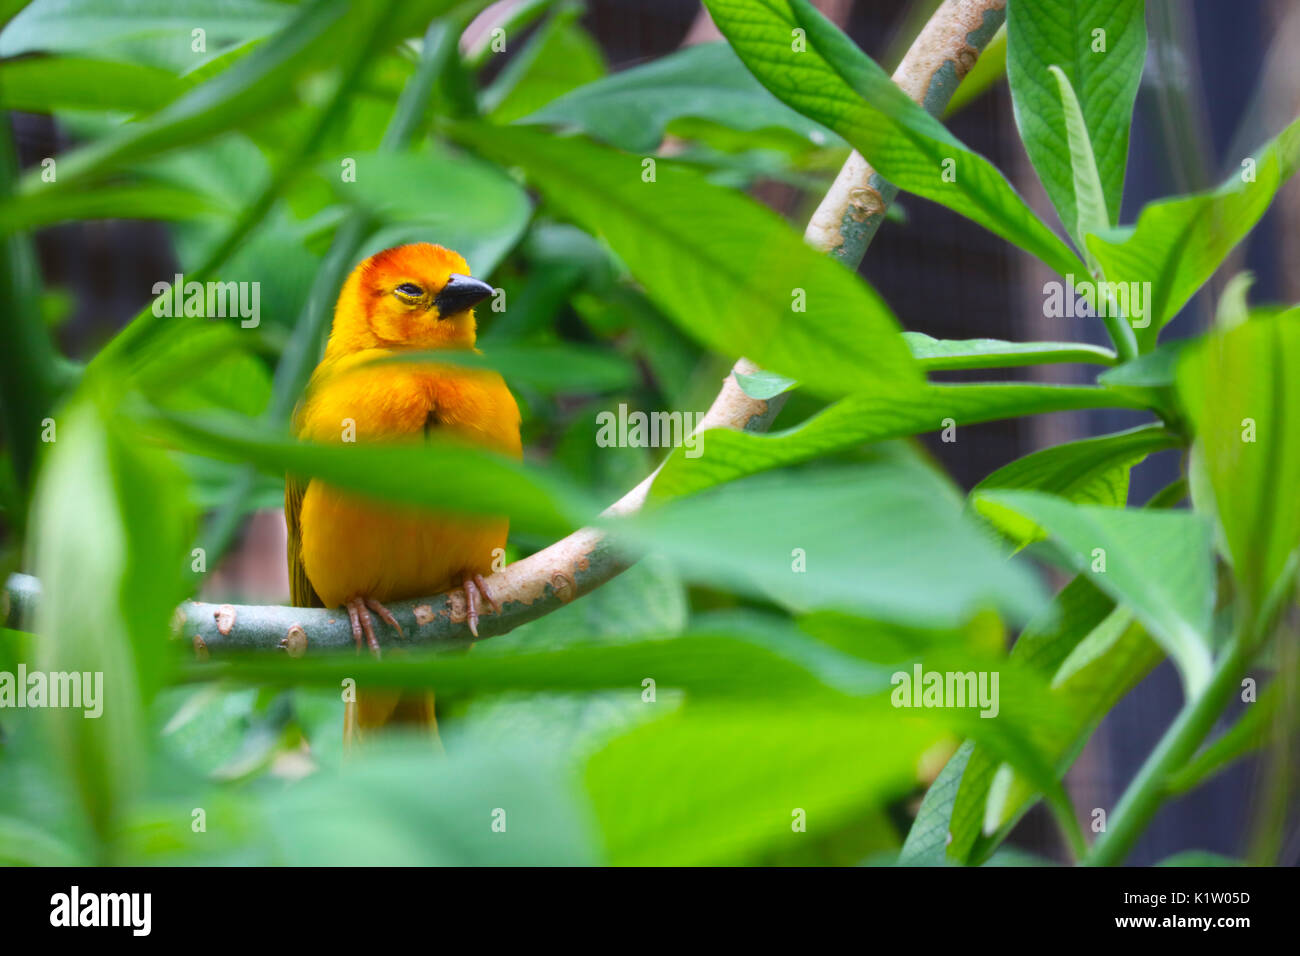 Sleepy leuchtend gelben Golden taveta Weaver Vogel auf einem Zweig zwischen grünen Dschungel Wald versteckt Blätter Stockfoto